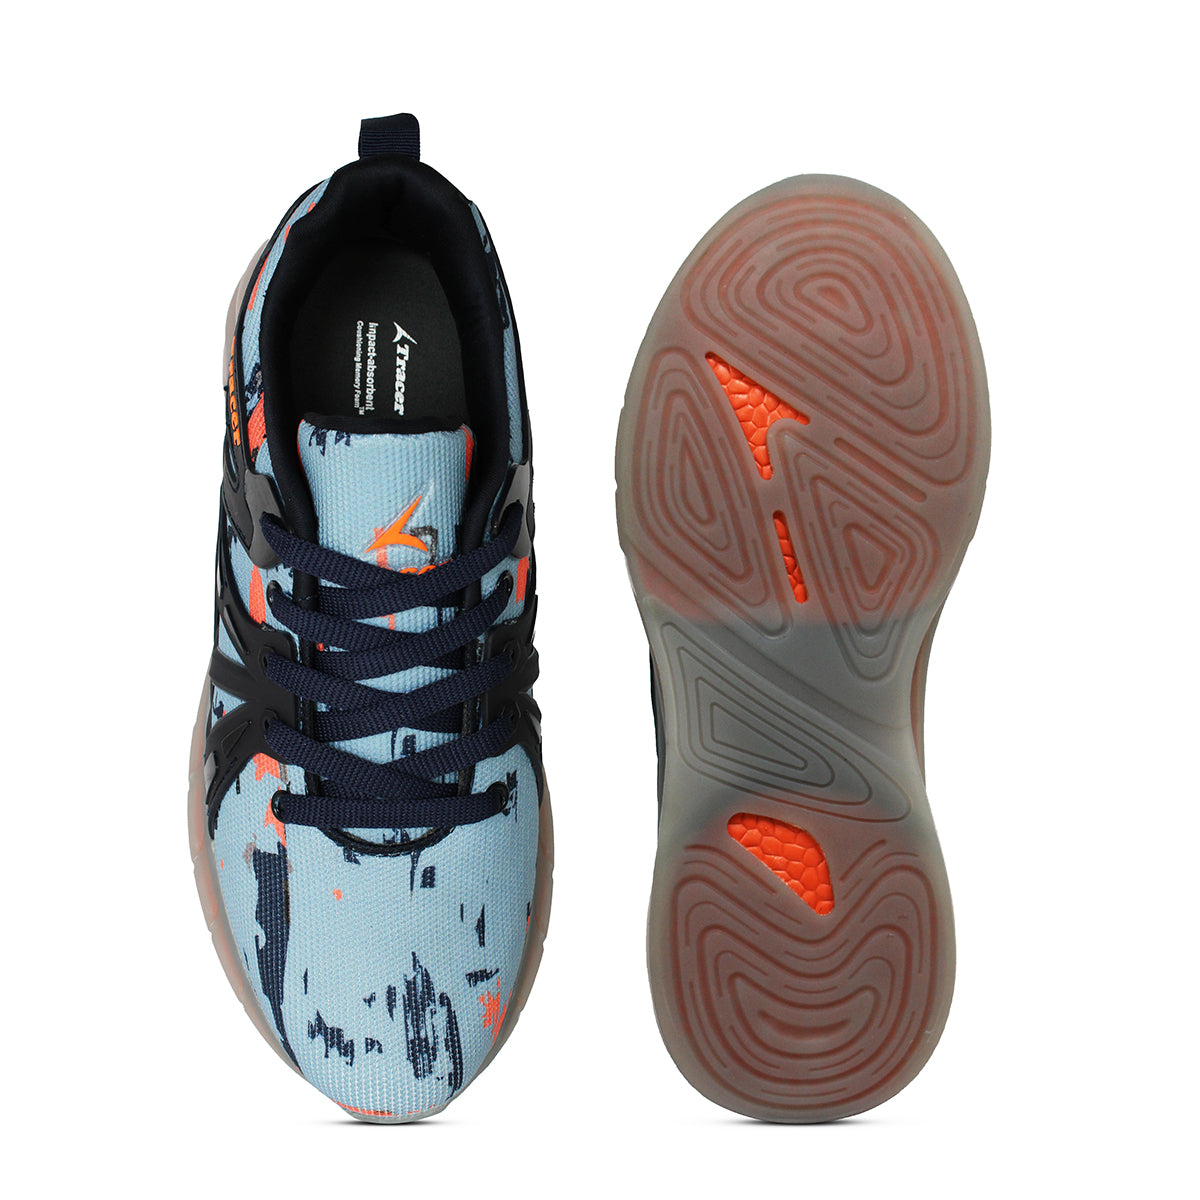 Men's Sneakers Grey Orange